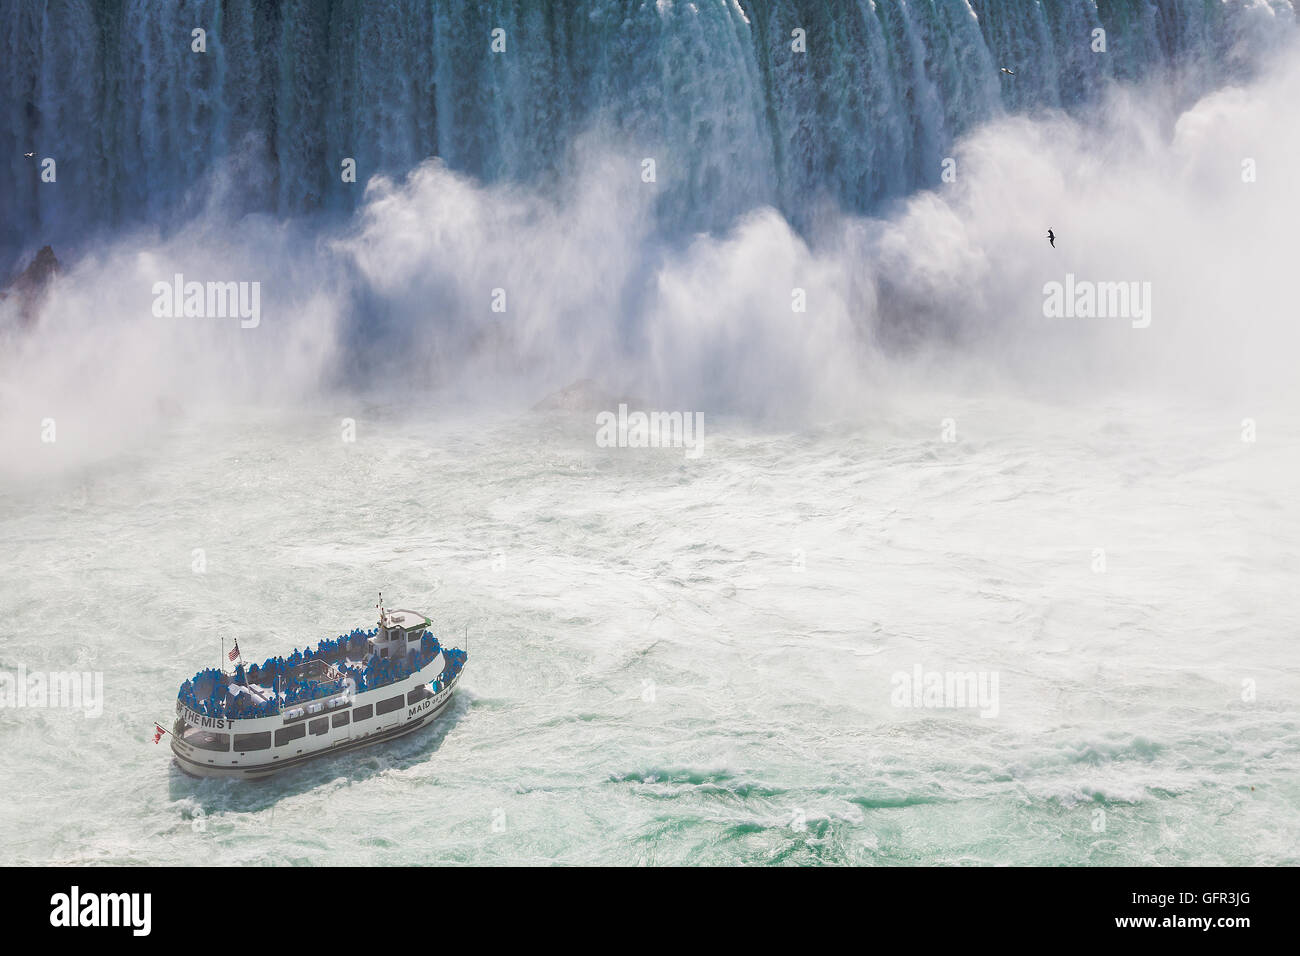 Niagara-Falls, Ontario, Canadá - 5 de julio de 2015: Vista de un barco, Maid of the Mist, navegando cerca de las cataratas de la herradura en Nia Foto de stock